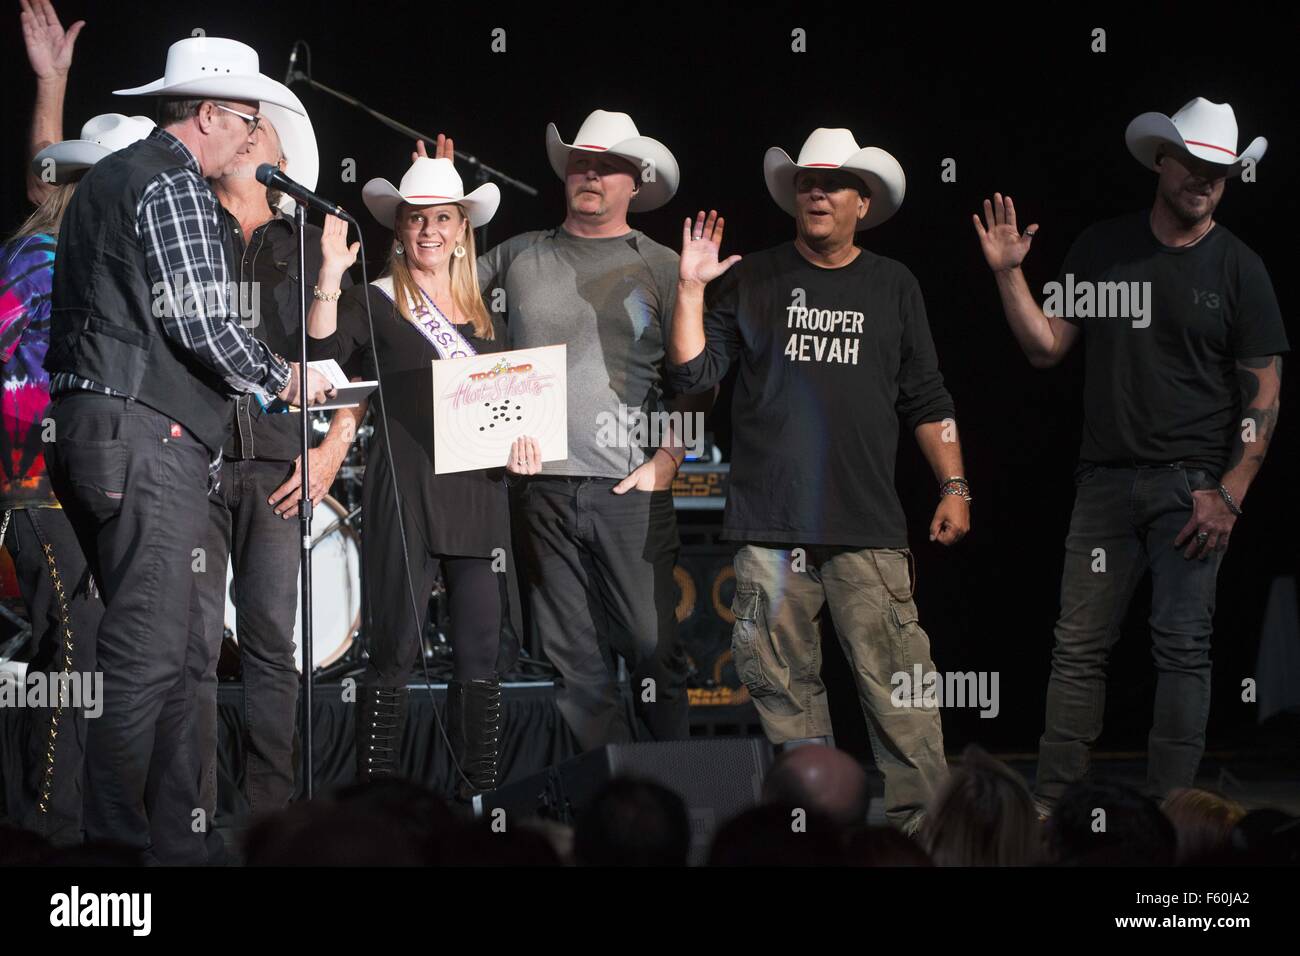 Canadian rock band Trooper ricevere onorario di cappello bianco di Western ospitalità in una cerimonia che si è svolta durante il loro concerto: Trooper dove: Calgary, Canada quando: 24 Set 2015 Foto Stock